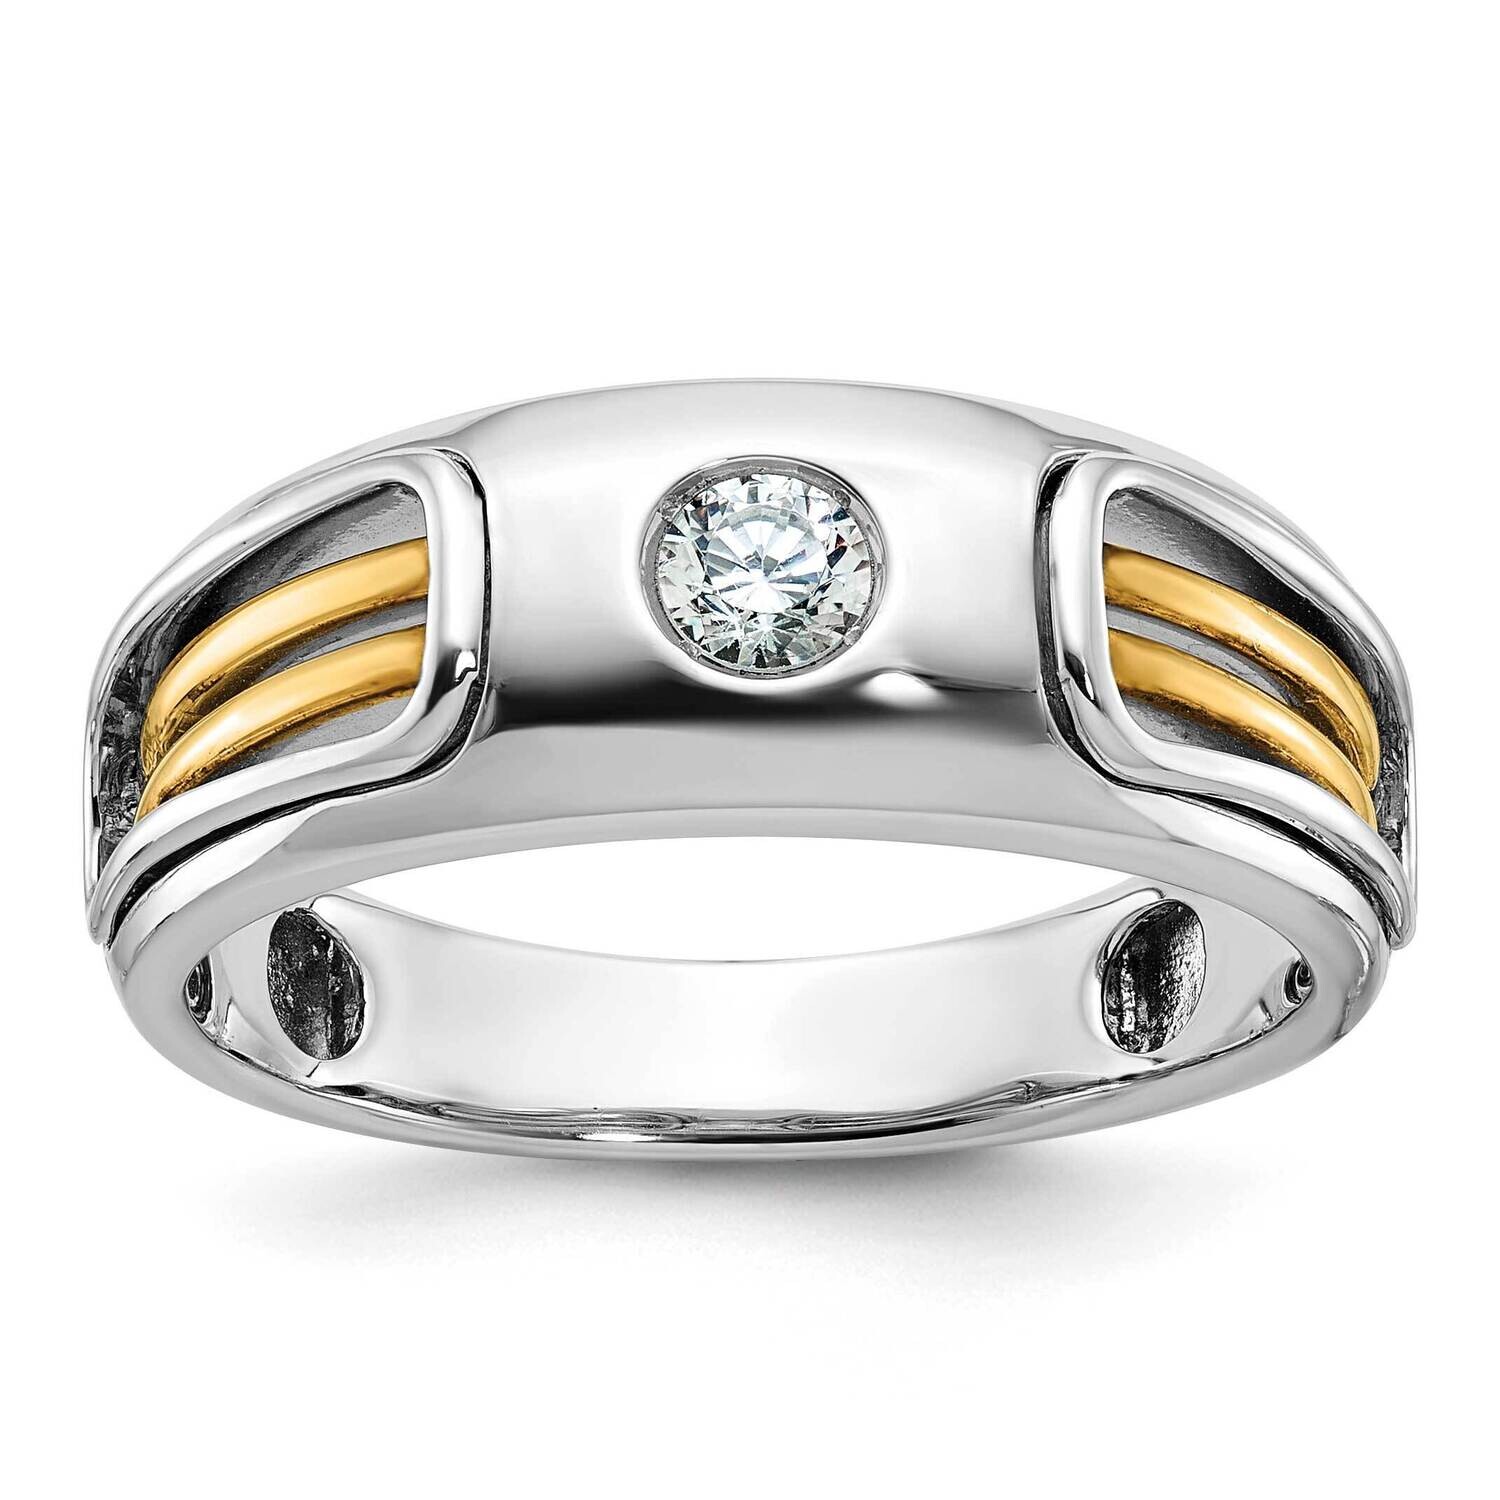 Ibgoodman Men's Diamond Ring Mounting 14k Two-Tone Gold B63971-4WY